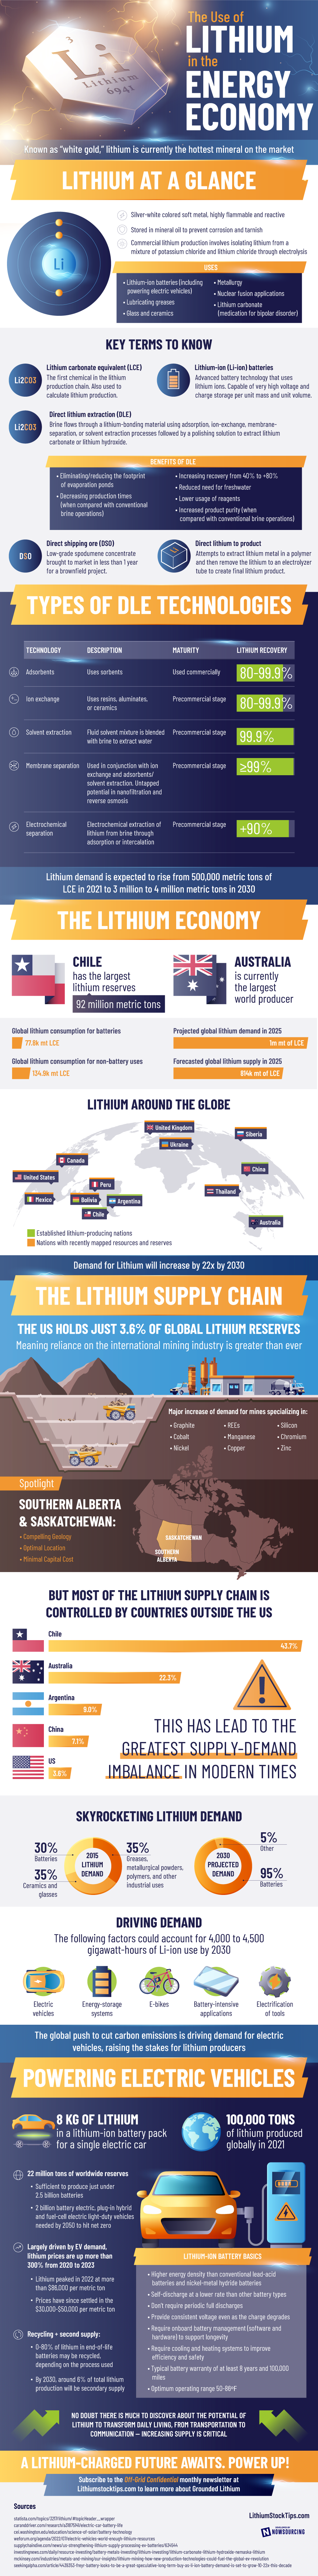 Lithium In The Energy Economy